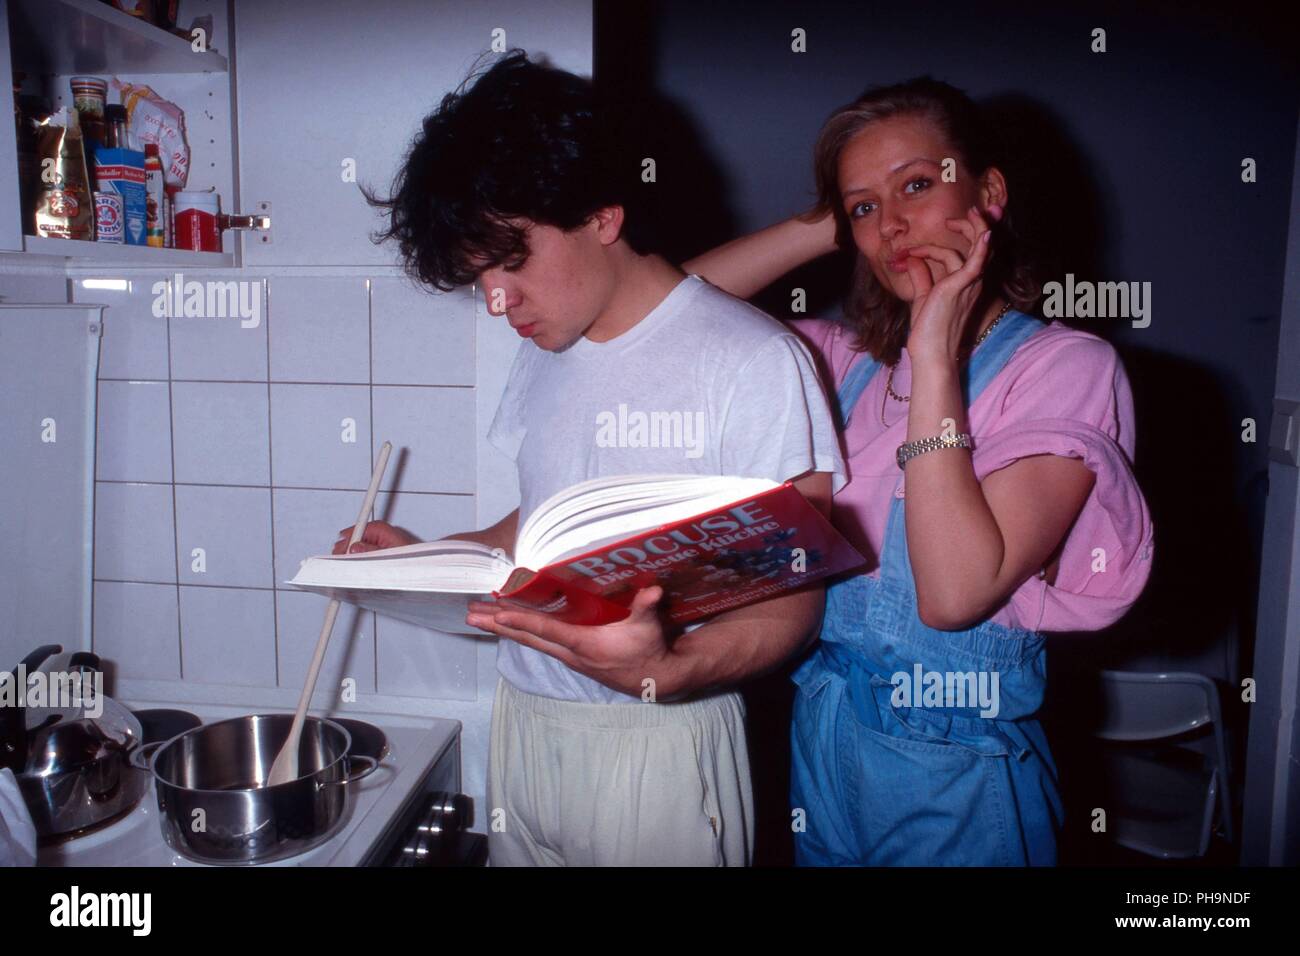 Sänger Nino de Angelo studiert mit Freundin Judith Coersmeier ein Kochbuch von Paul Bocuse in einer Homestory Fotoreportage in Köln, Deutschland 1983. Stock Photo